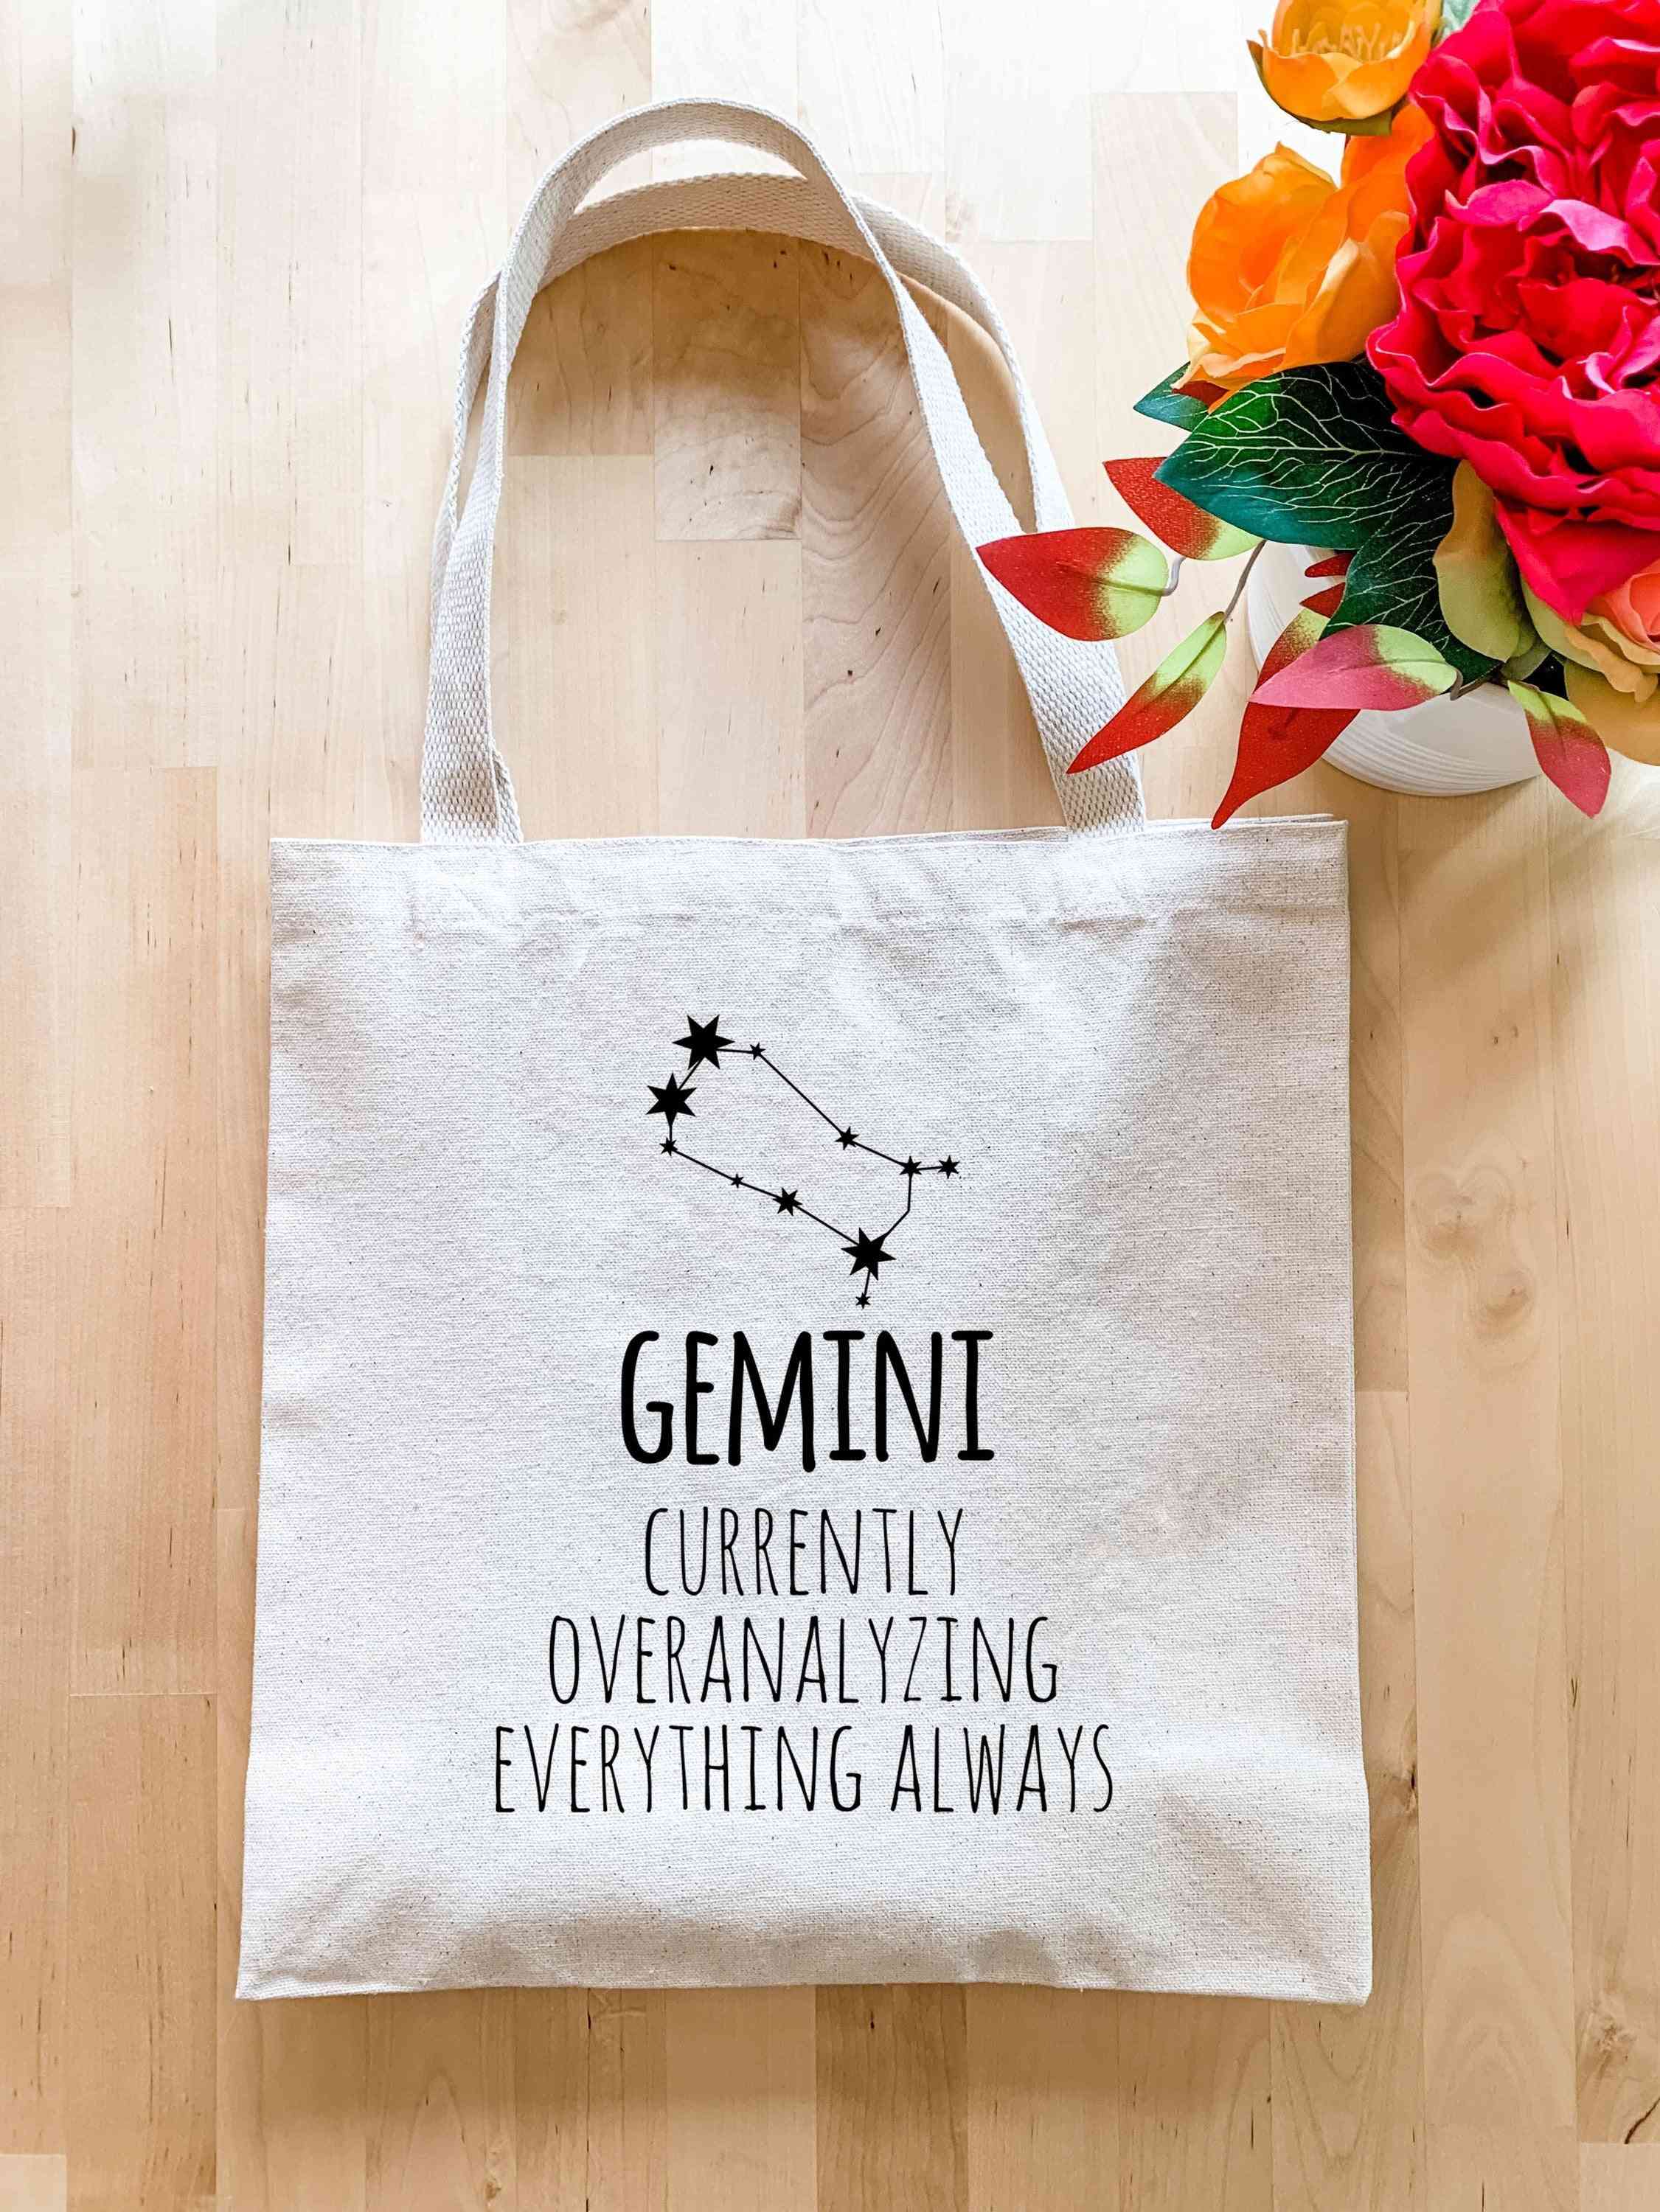 Gemini zodiac (atualmente superanalizando tudo) - sacola